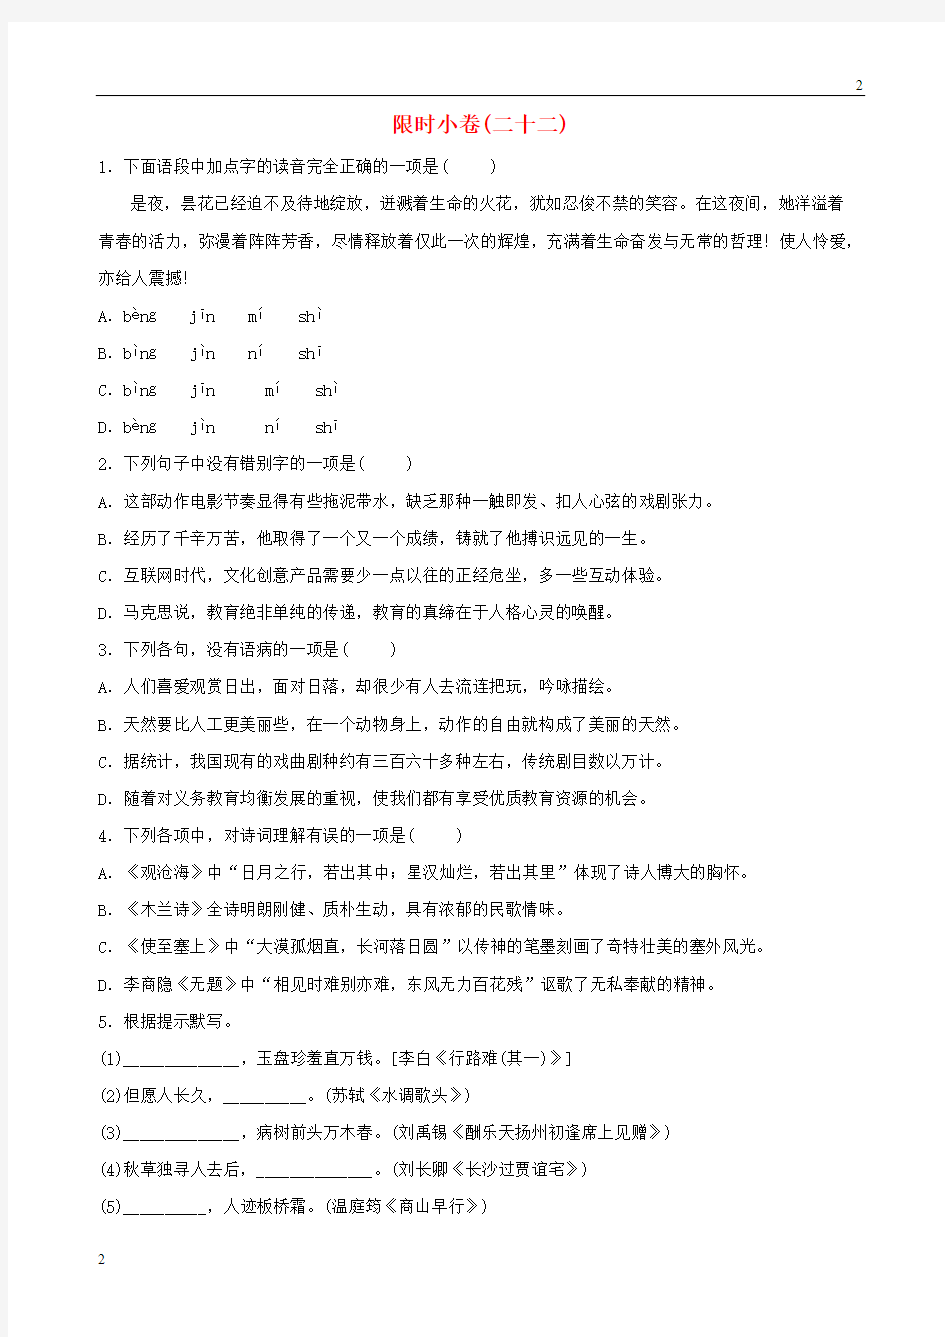 2019年中考语文总复习限时许(22)